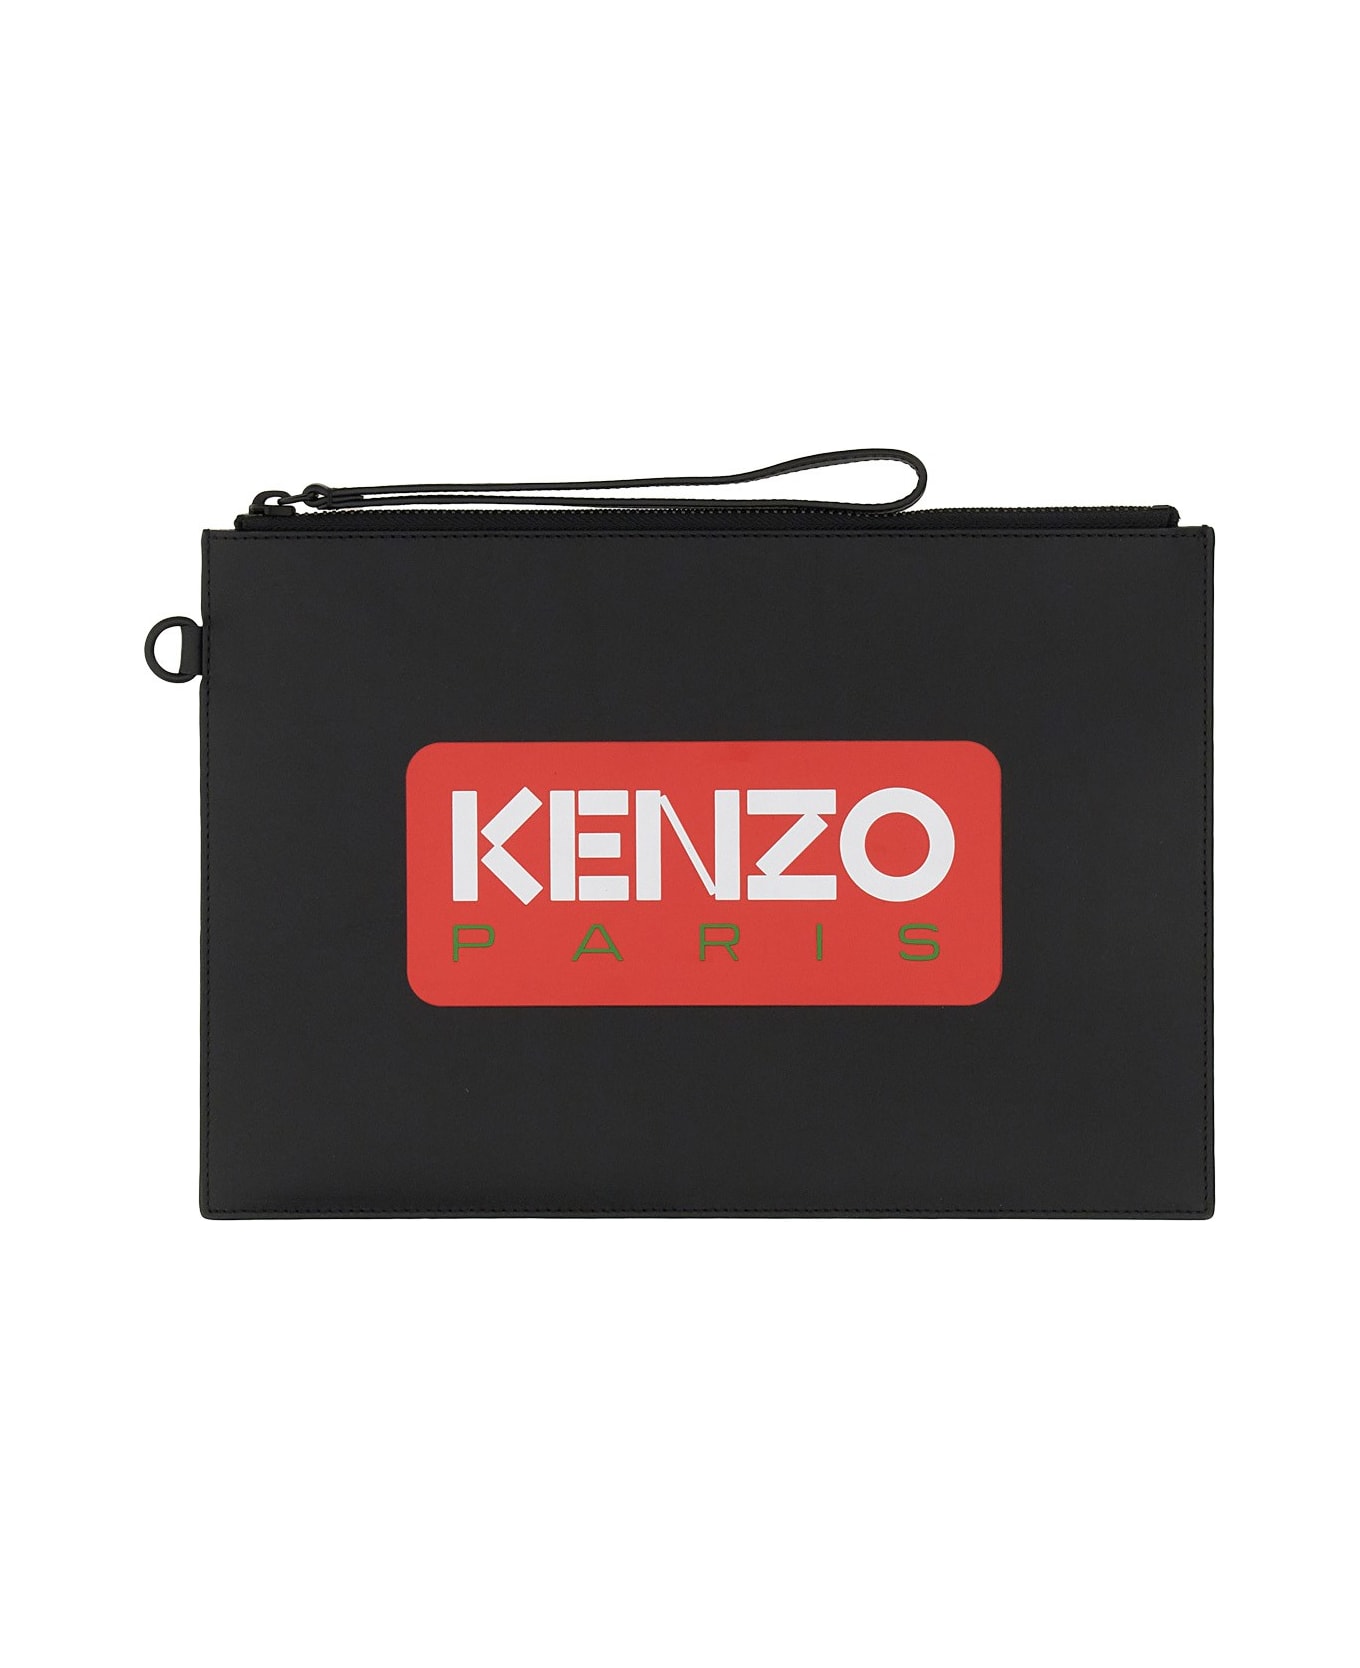 Kenzo Clutch With Logo - NERO